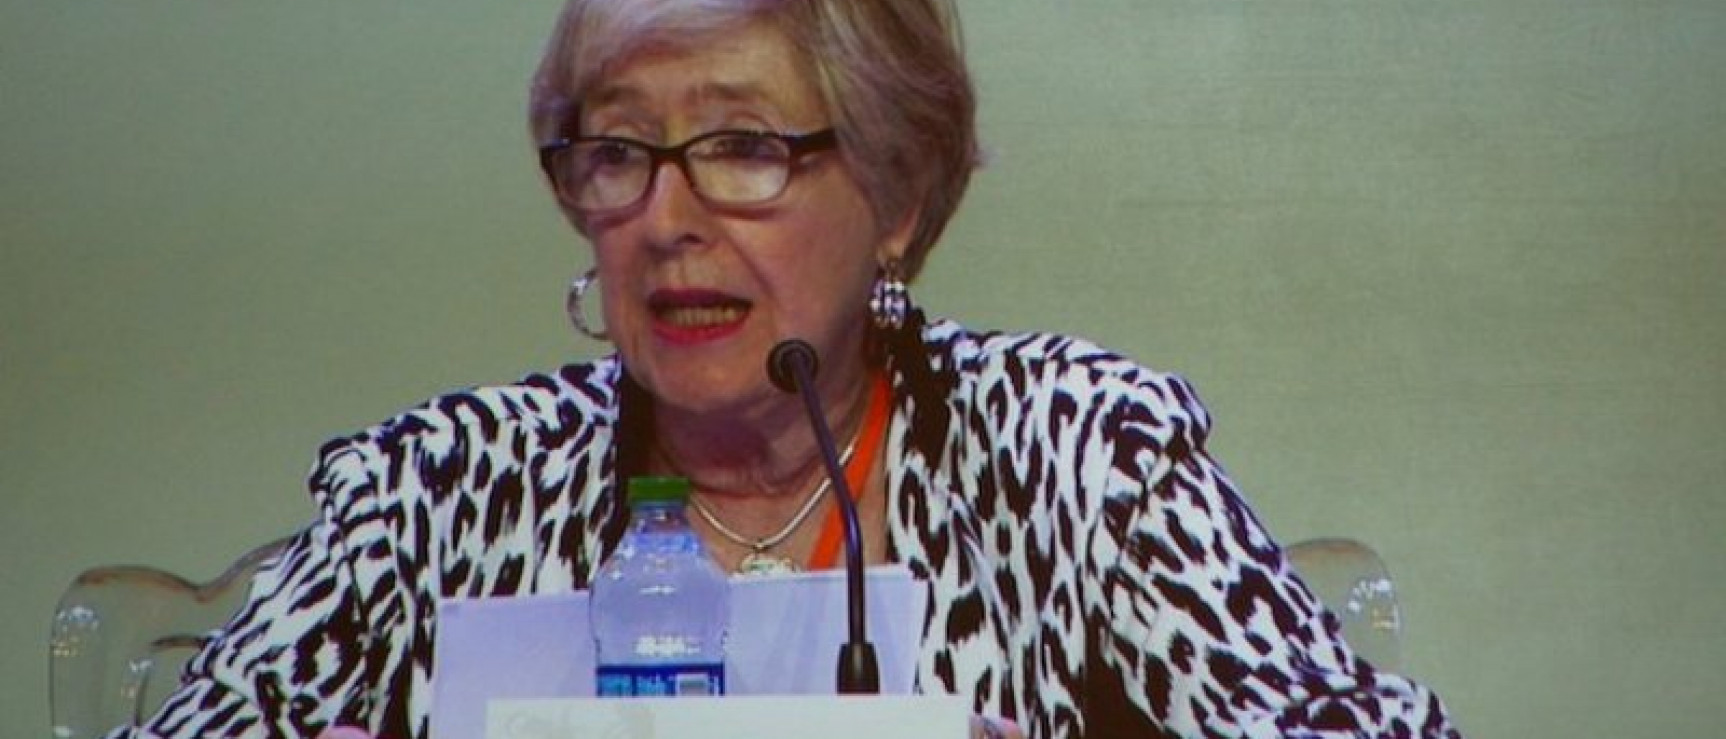 Mercedes López-Baralt, miembro de la Academia Puertorriqueña de la Lengua Española.